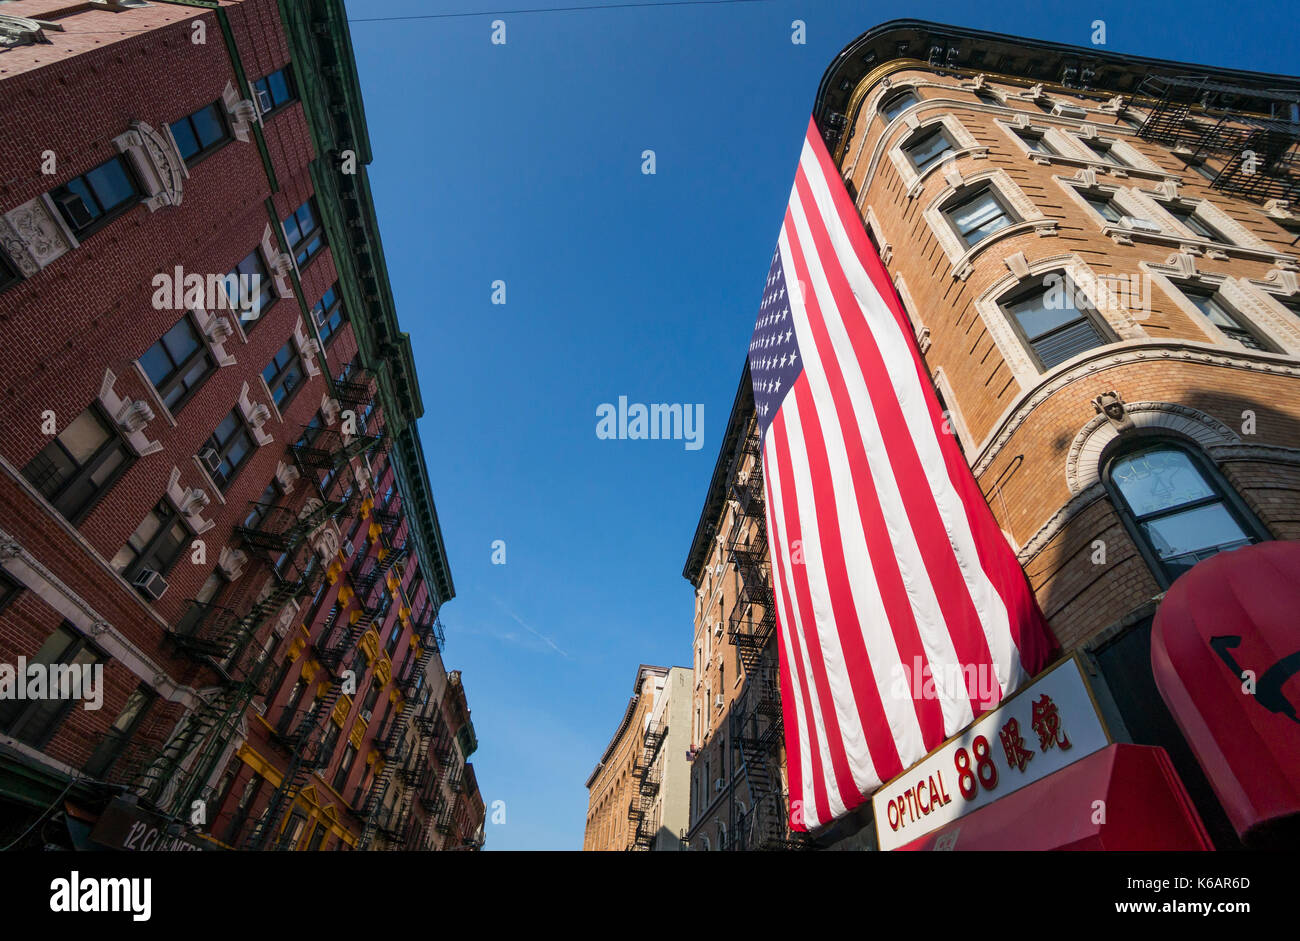 Giant bandiera americana appesa su un casamento in Chinatown, New York City, nella parte inferiore di Manhattan Foto Stock